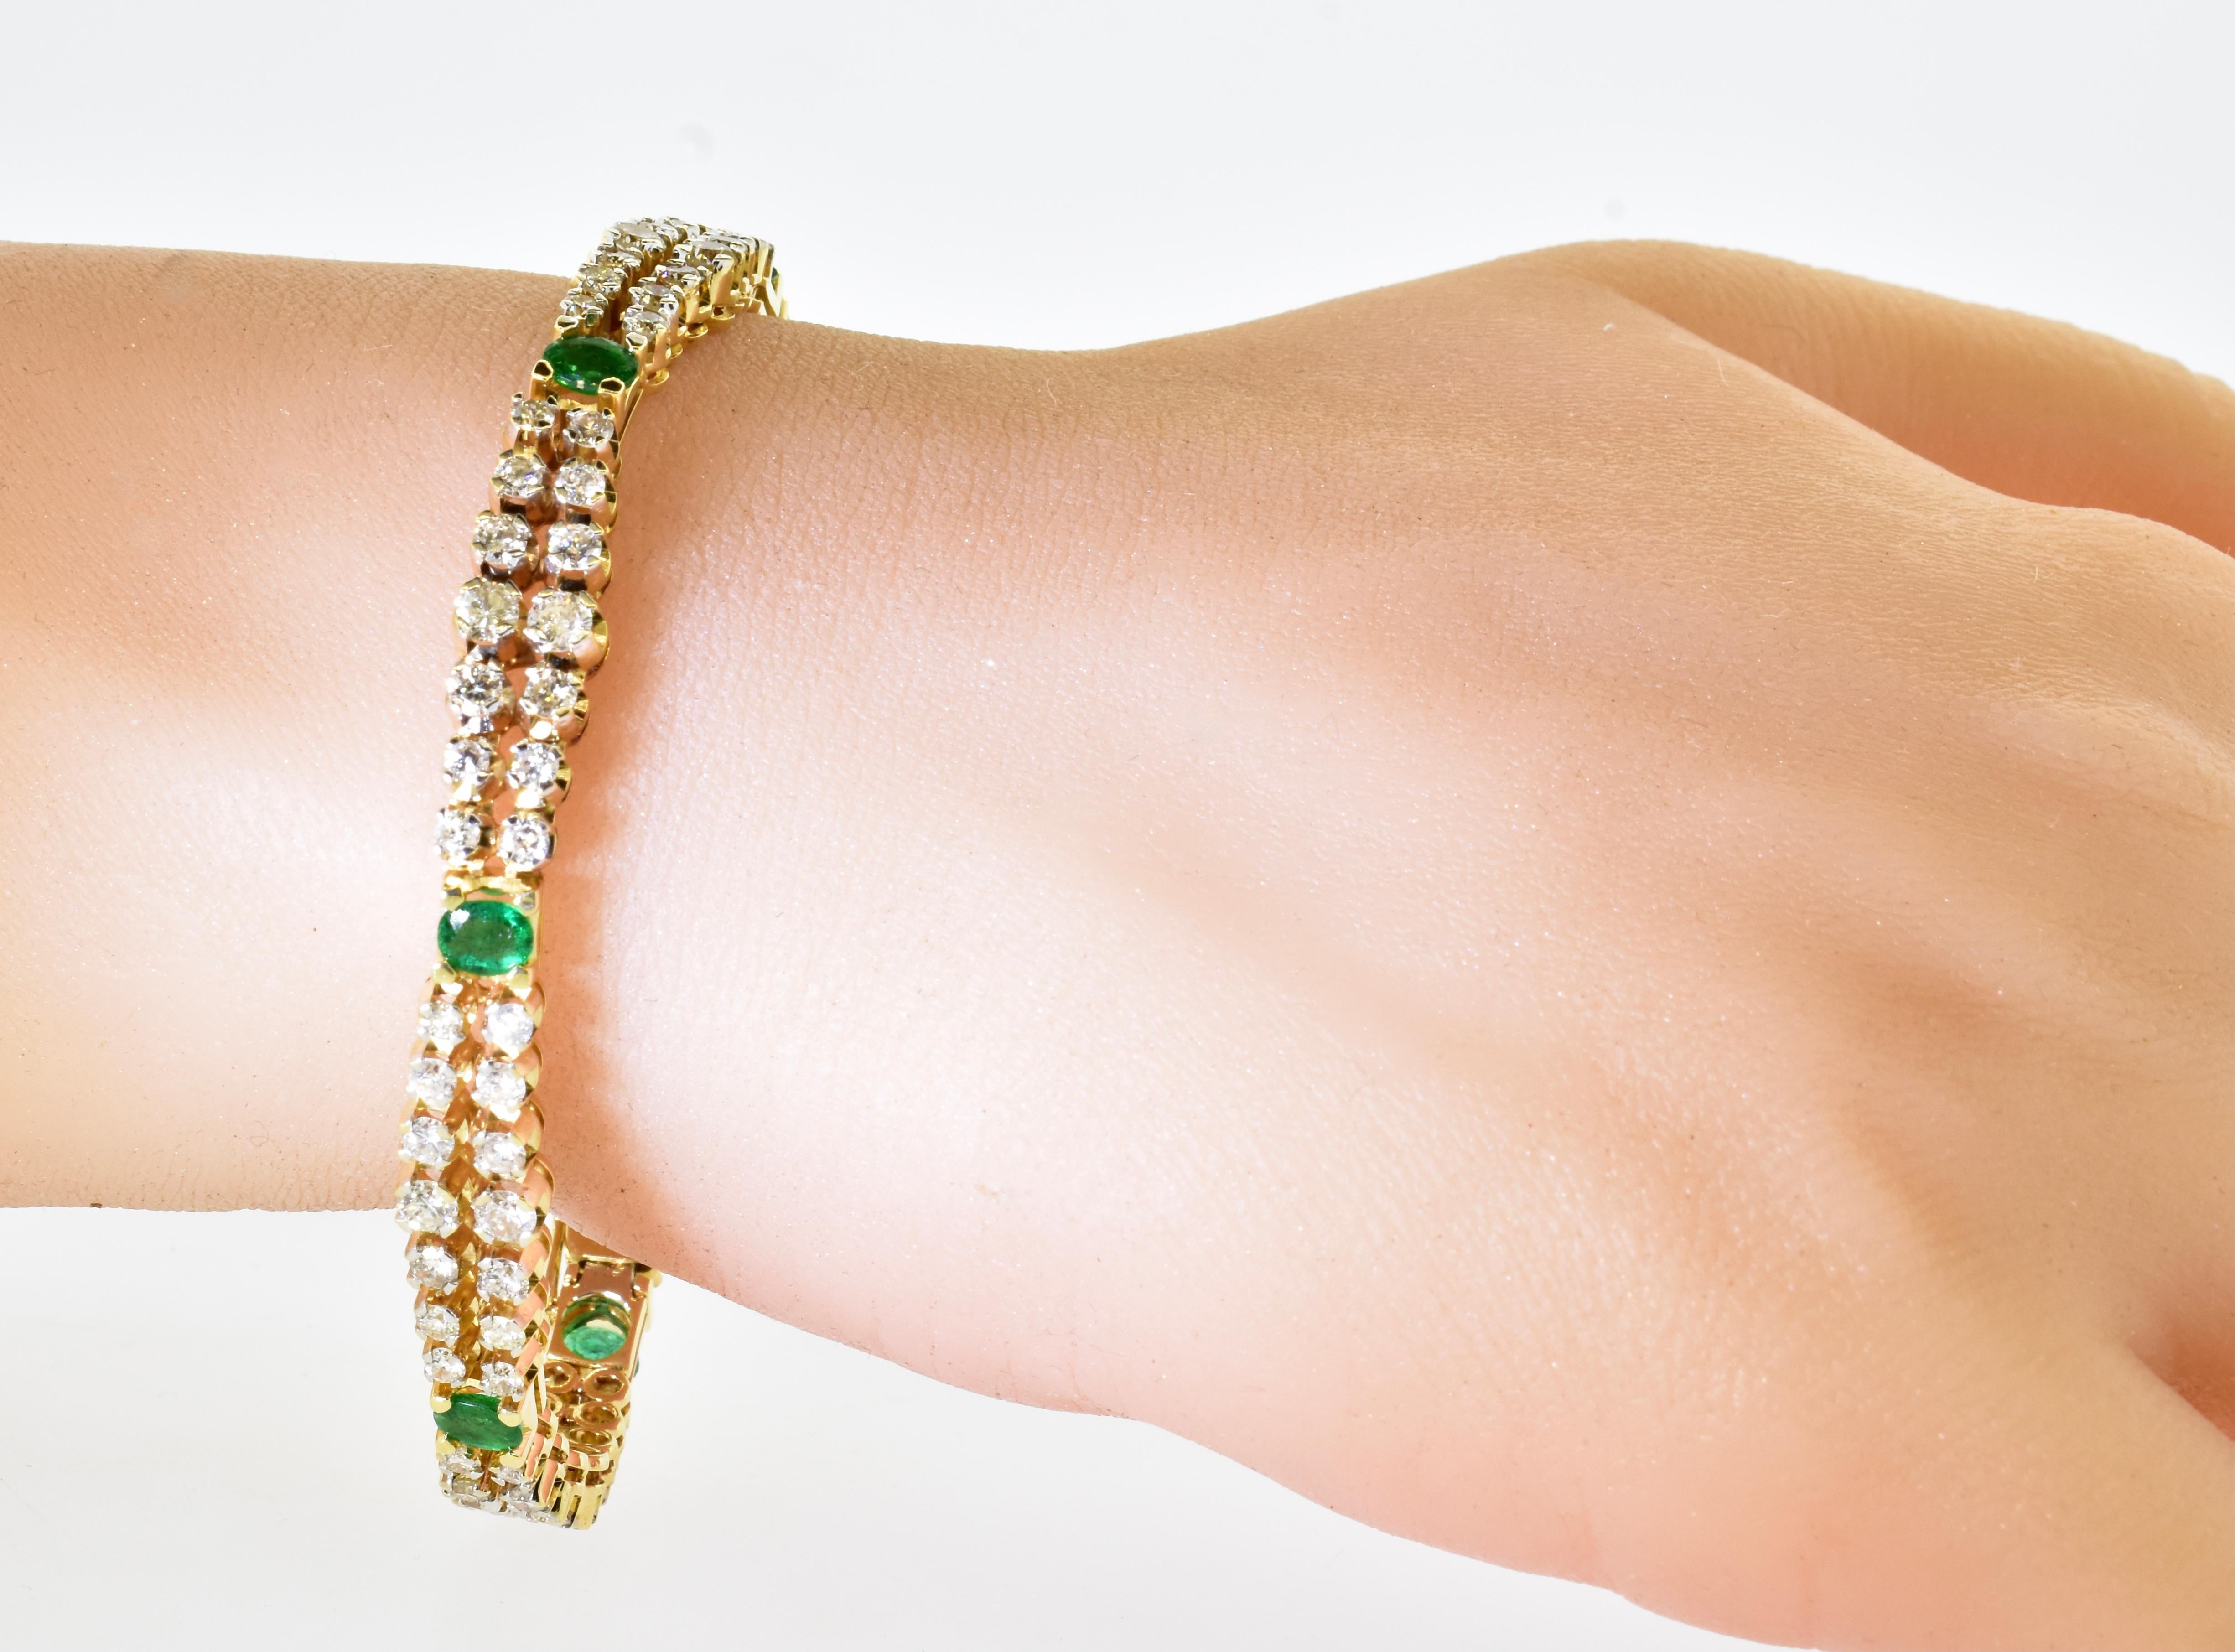 Smaragd und Diamant-Armband in Gelbgold, dieses flexible Armband hält 6 ovale natürliche grüne Smaragde, alle gut in dieser hellen grünen Farbe abgestimmt, sie sind schätzungsweise 1,25 cts. insgesamt wiegen.  Insgesamt gibt es 90 weiße Diamanten,